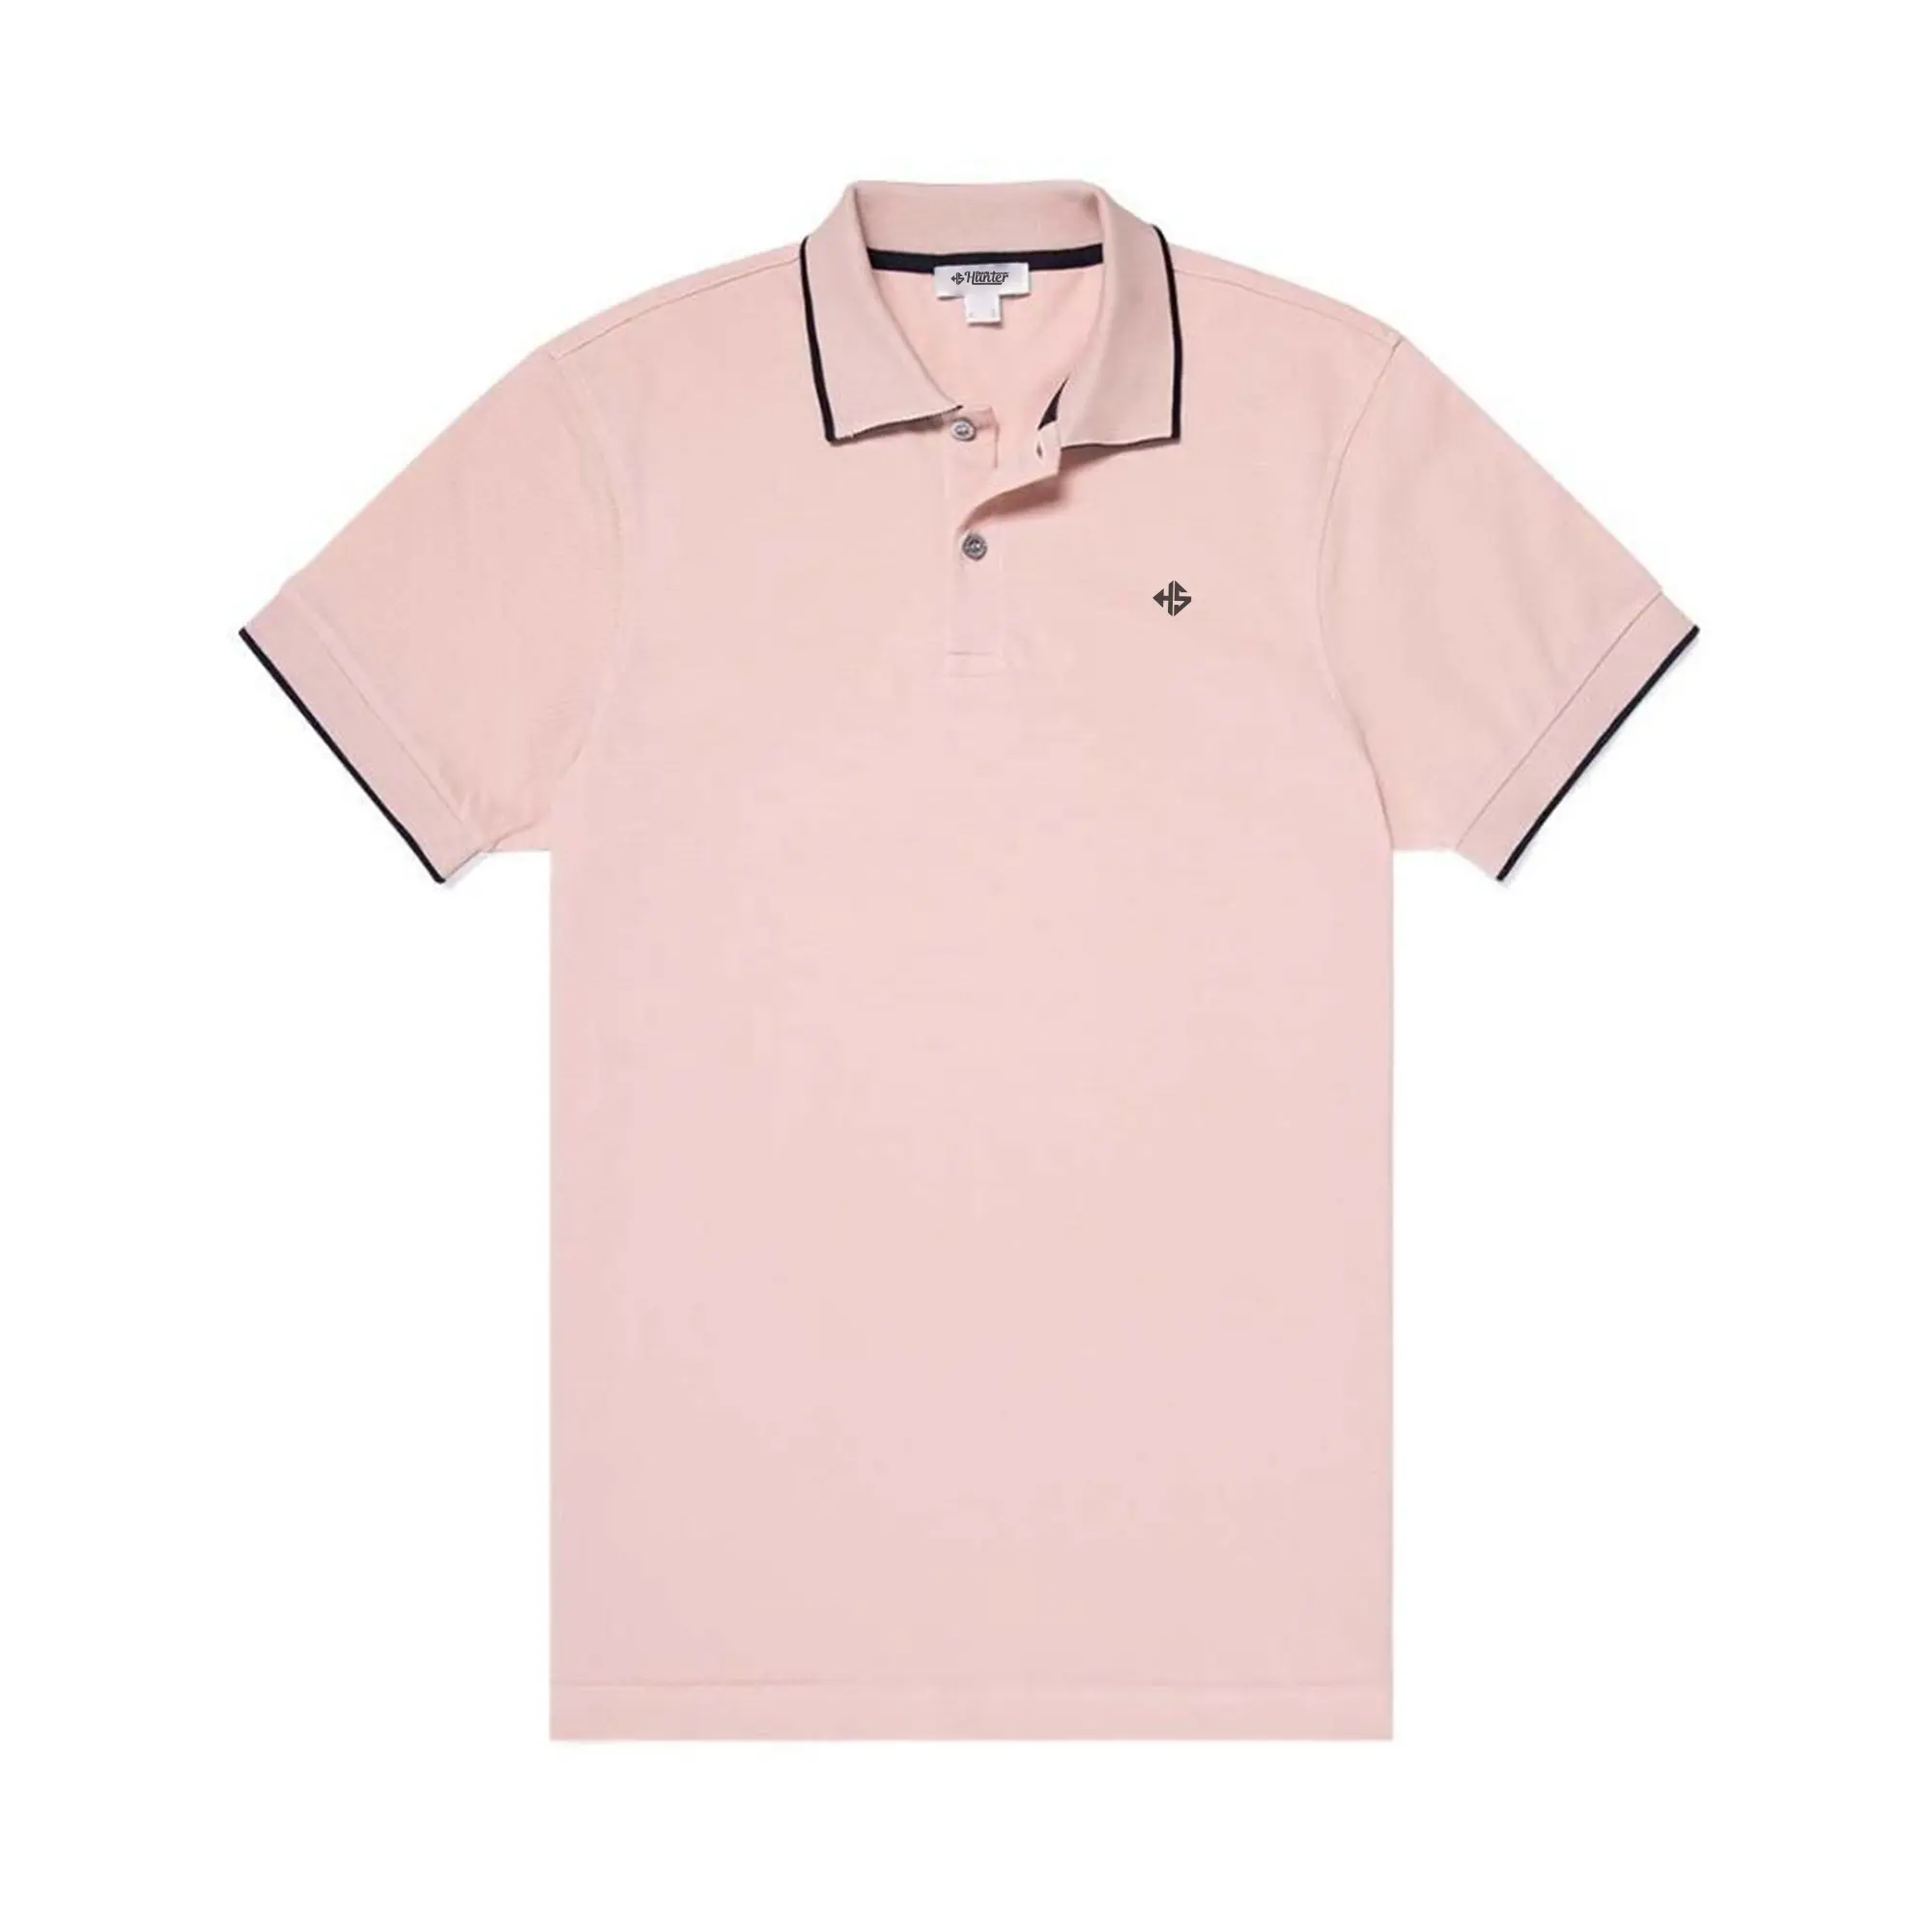 Camiseta corta de algodón para hombre, Polo de marca, diseño personalizado, manga corta